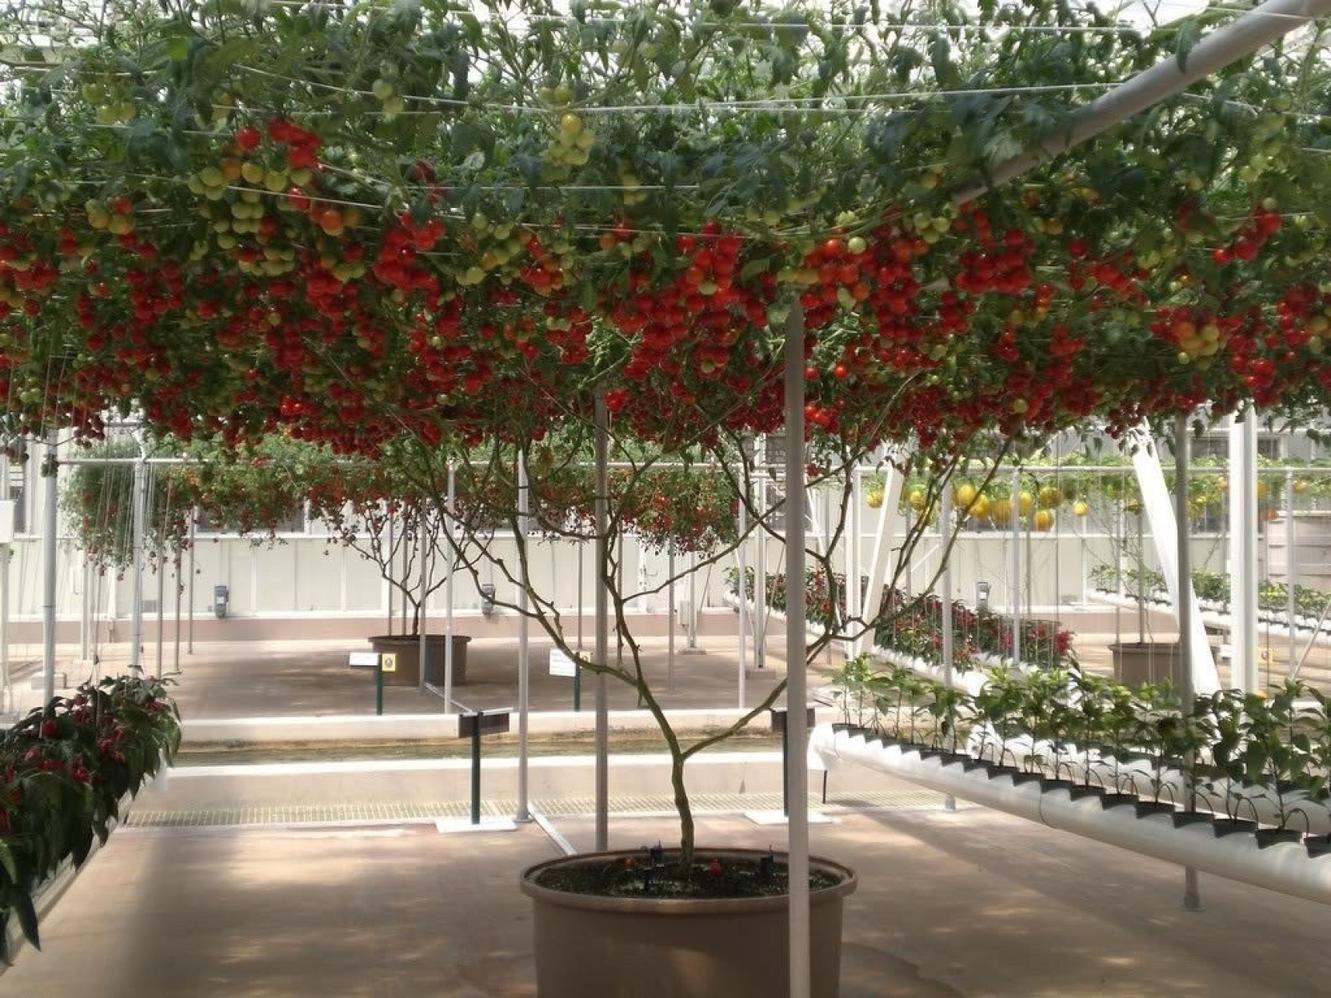 В Израиле вывели ″томатное дерево″. Урожай - огромный! Любители помидор оценят этот райский уголок!